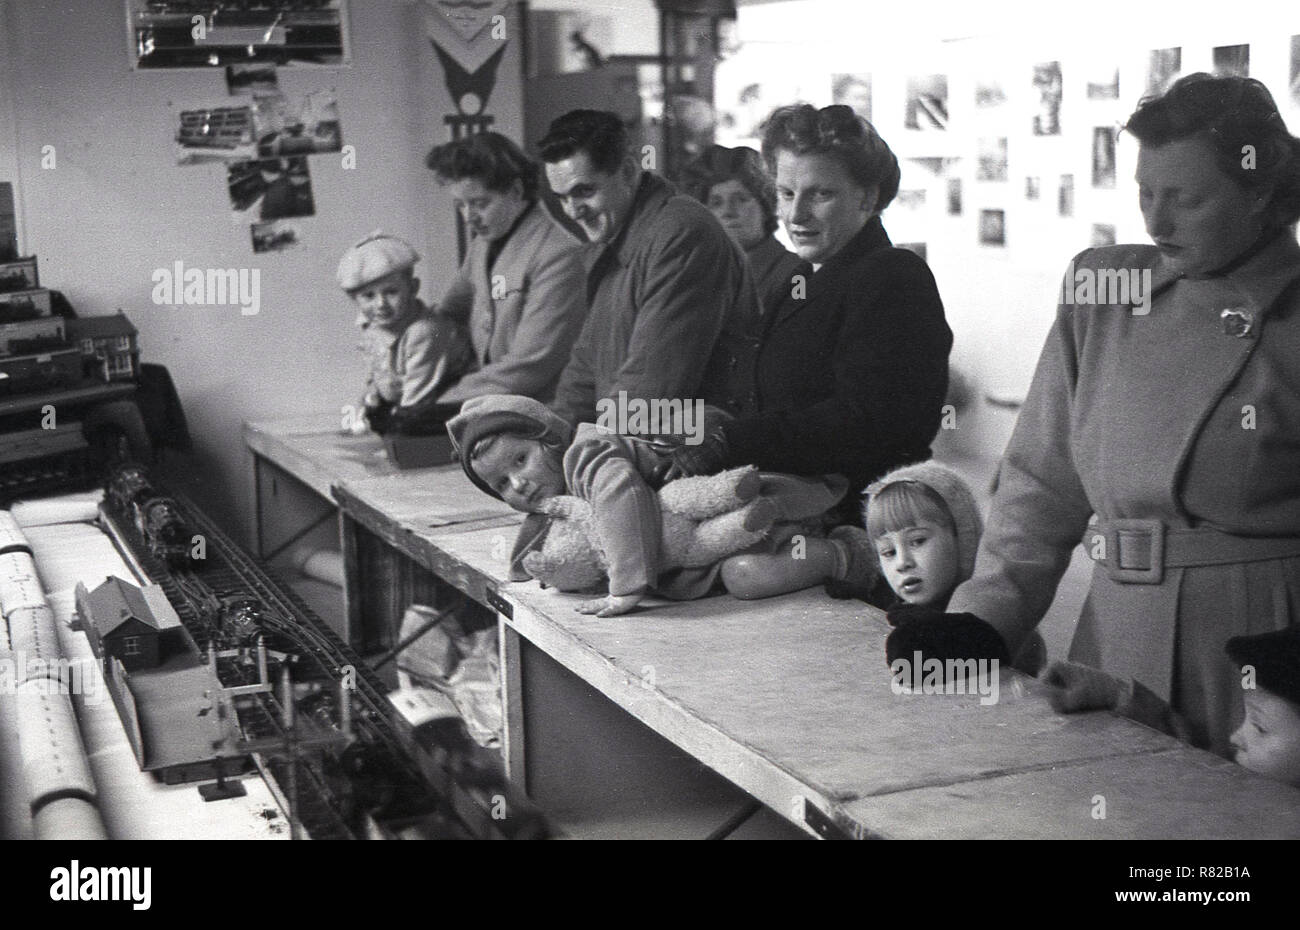 1950, historische, mit ihren Eltern, junge Kinder schiefen über den Zähler einen besseren Blick auf den Zug zu erhalten, stellen Sie eine Ausstellung für Modelleisenbahnen. Stockfoto